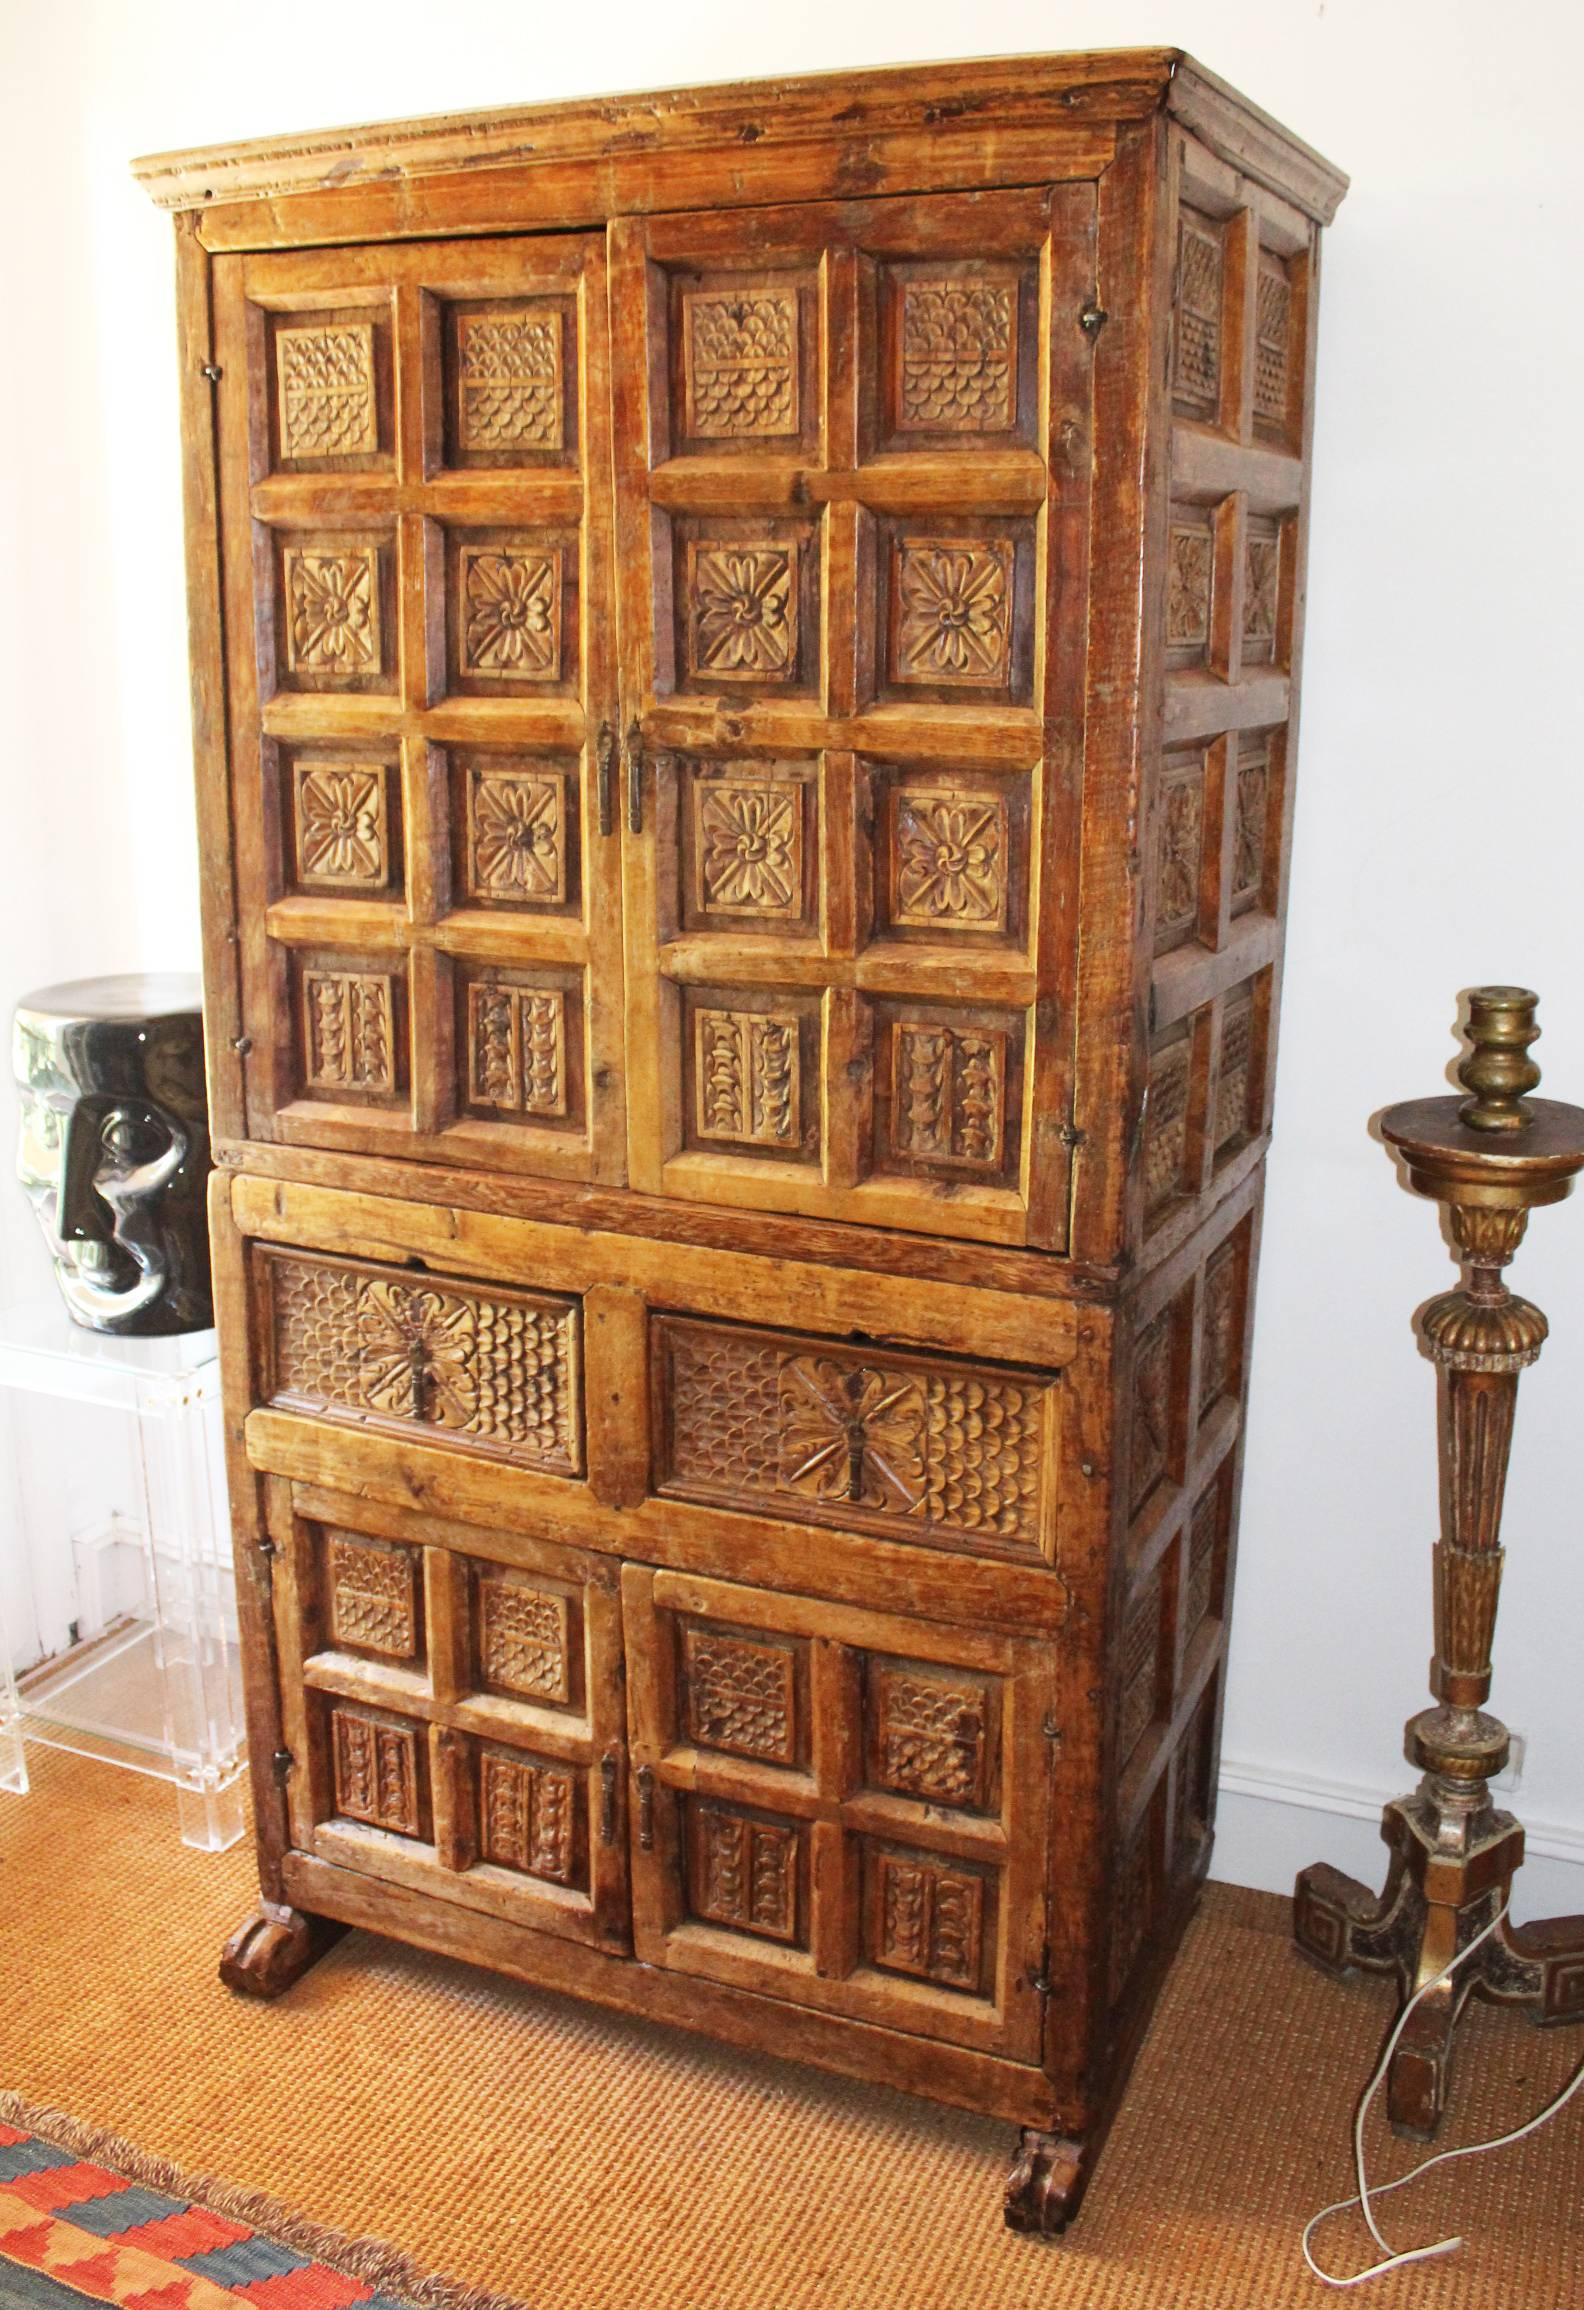 Kolonialer Schrank aus bolivianischem Fruchtholz des 18. Jahrhunderts, handgeschnitzt mit klassischen geometrischen Mustern und floralen Motiven, die die vier Türen und zwei Schubladen sowie die Seitenwände bedecken.
  